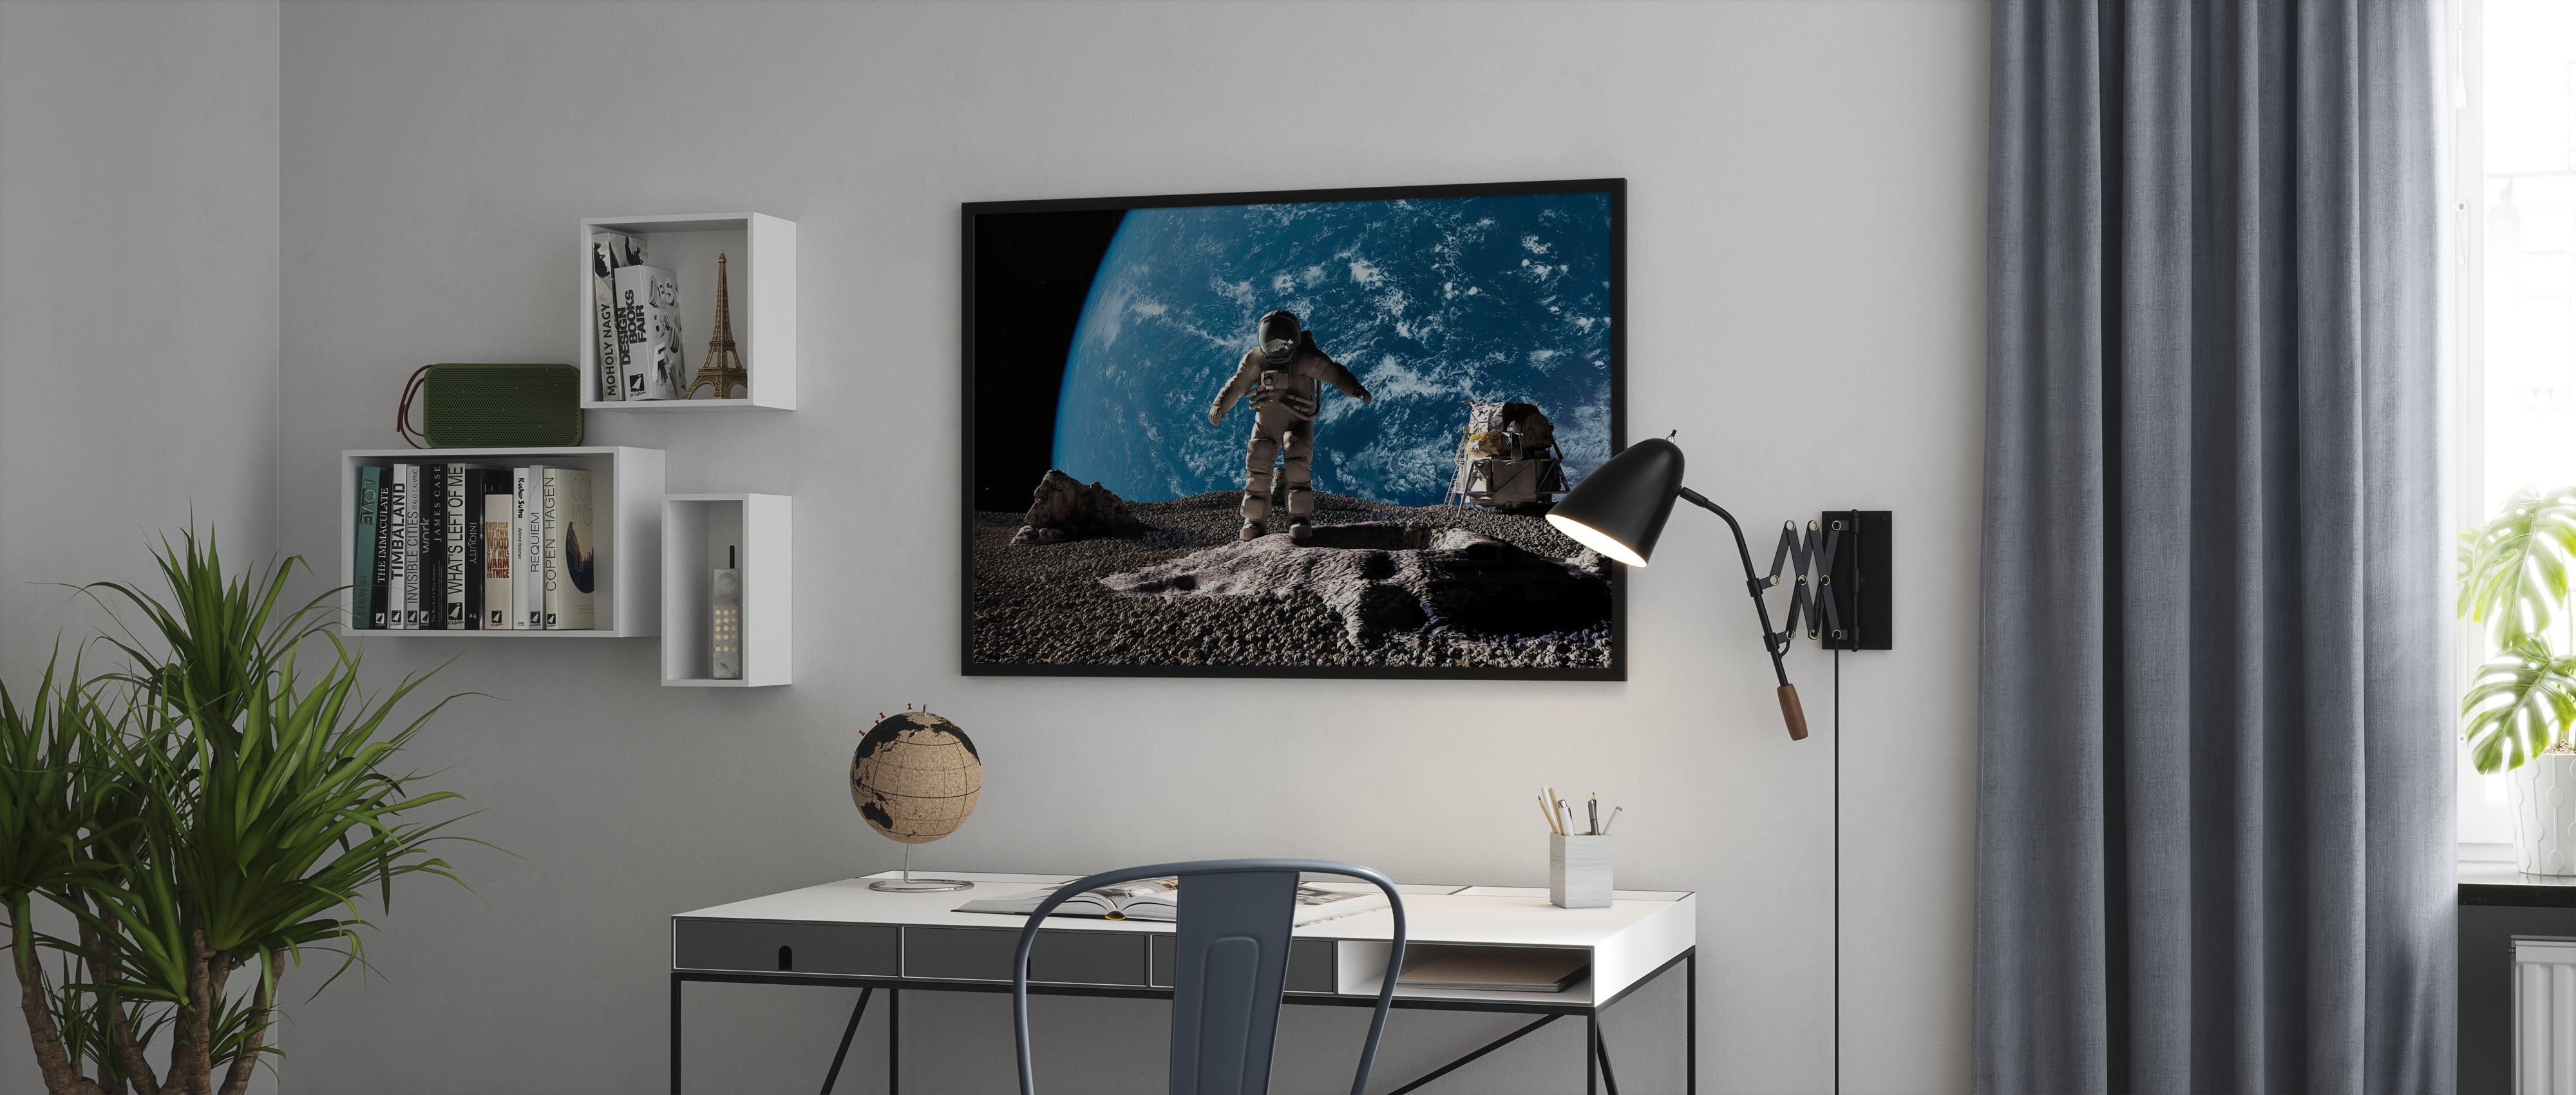 Leinwand-Bild Kunstdruck Hochformat 70x100 Bilder Planet Erde 